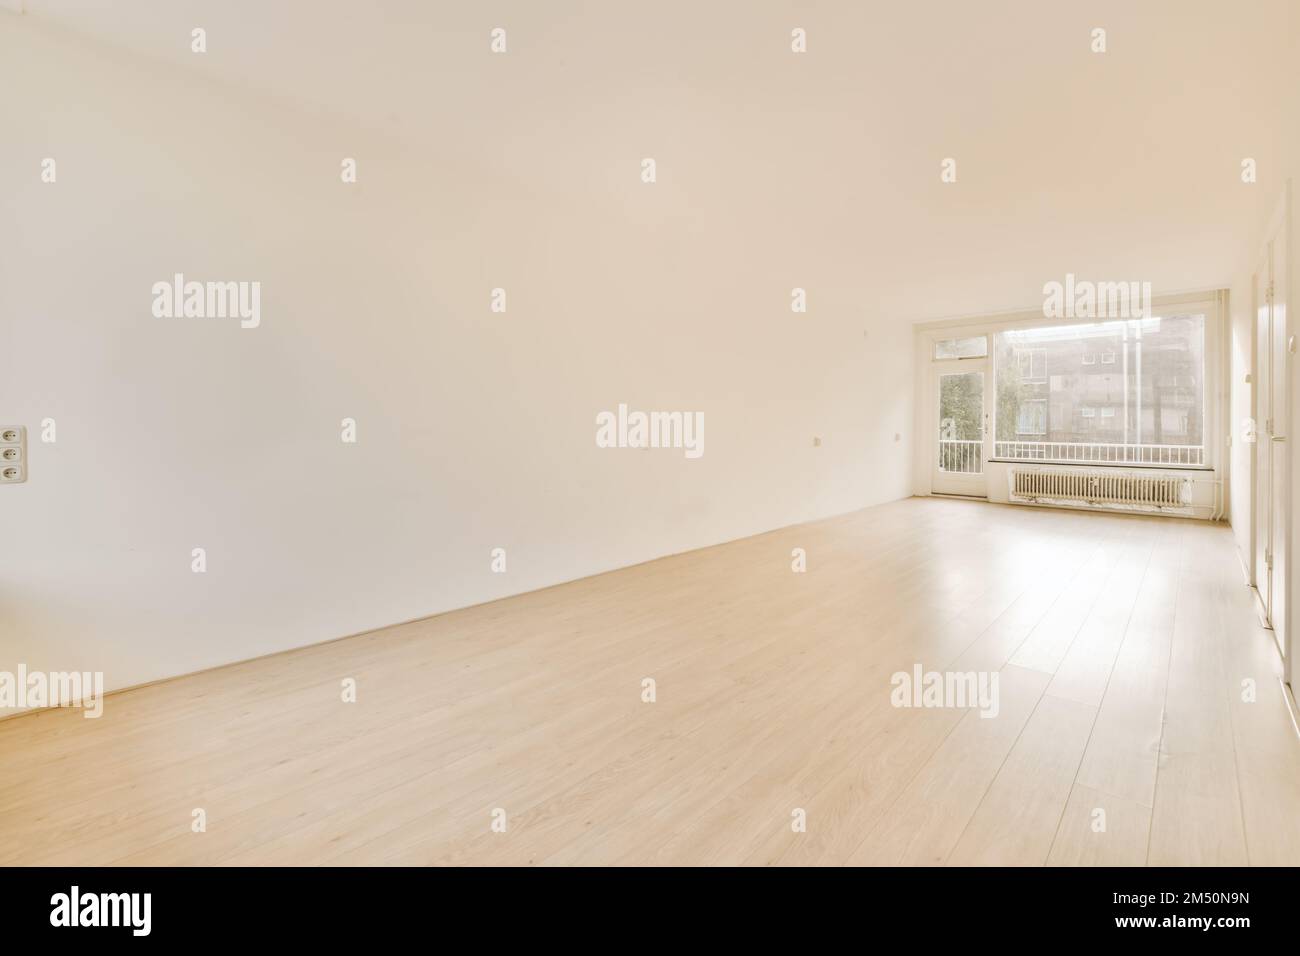 una stanza vuota con pareti bianche e pavimento in legno sulla destra, c'è una grande finestra sulla sinistra Foto Stock